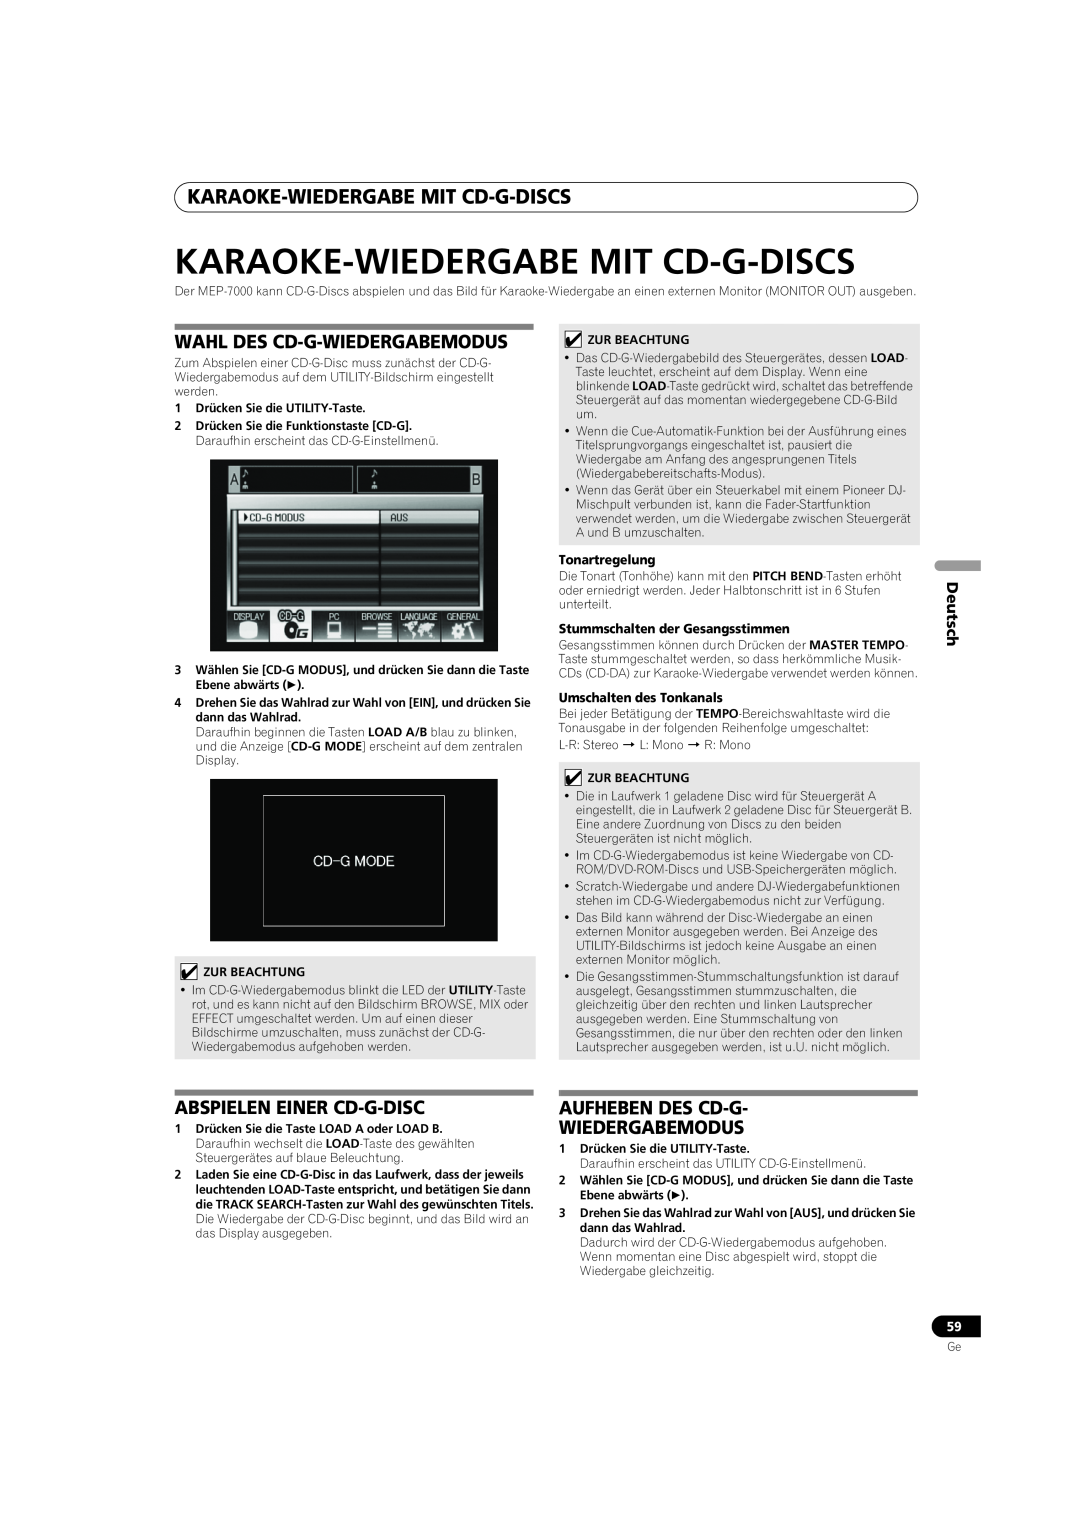 Pioneer MEP-7000 Karaoke-Wiedergabemit Cd-G-Discs, Wahl Des Cd-G-Wiedergabemodus, Abspielen Einer Cd-G-Disc, Deutsch 